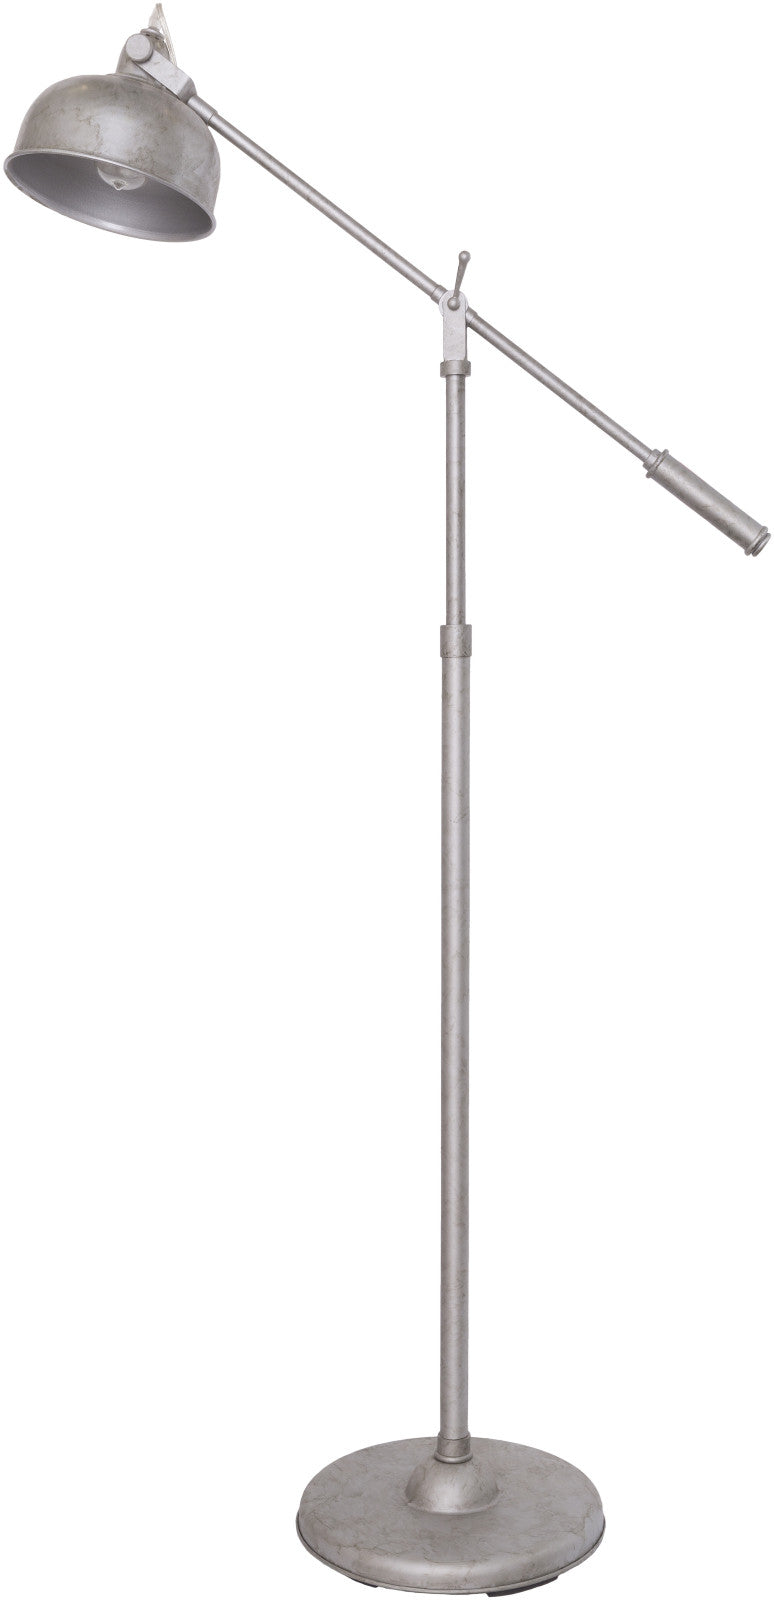 Surya Haleston HLS-659 Brushed Nickel Lamp Floor Lamp